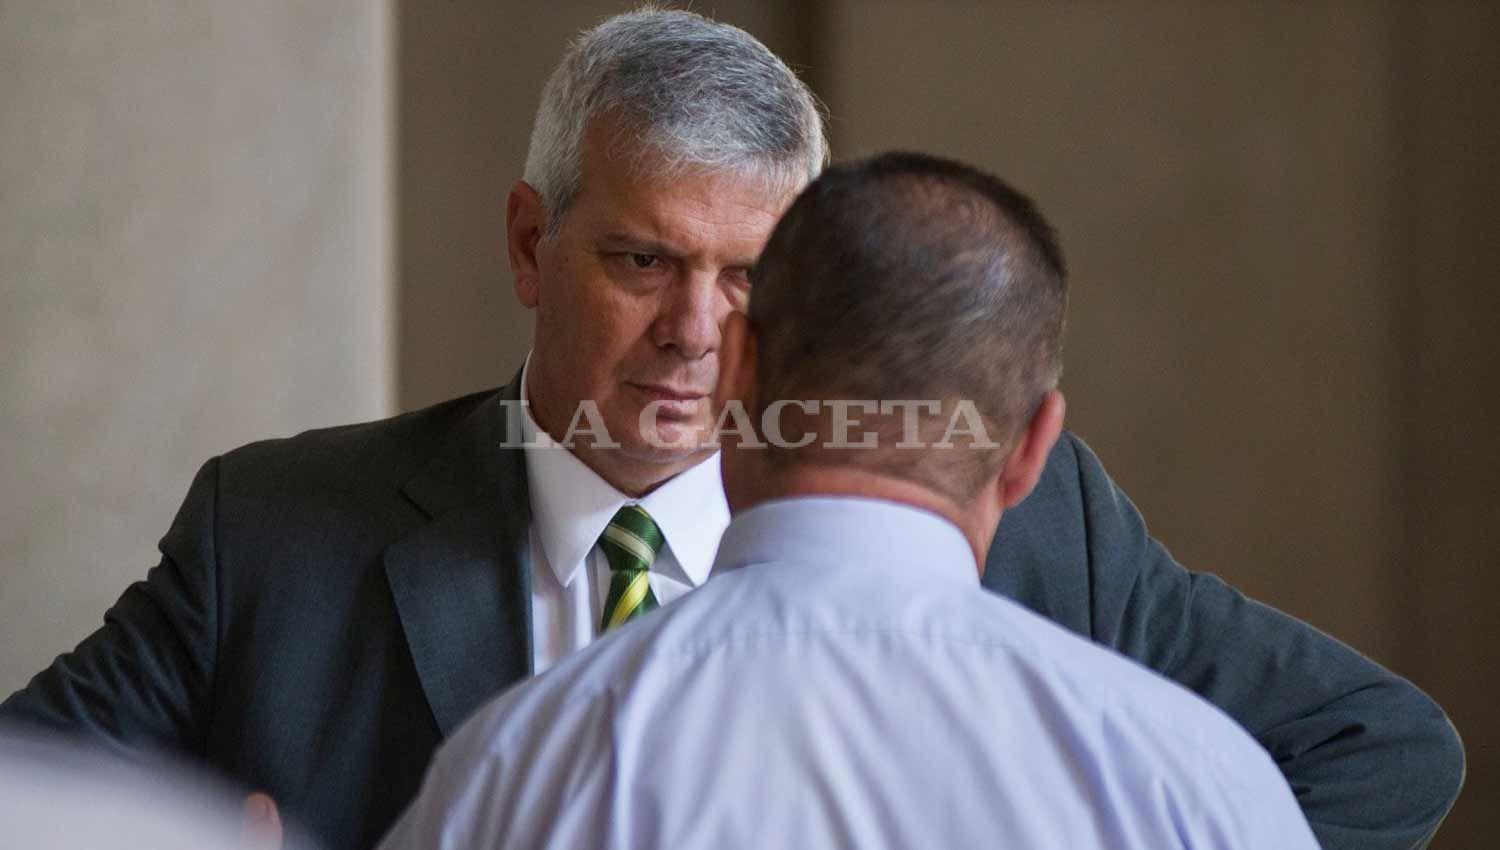 El ex jefe de policía Hugo Sánchez conversa con el ex subjefe Nicolás Barrera. LA GACETA / FOTO DE JORGE OLMOS SGROSSO